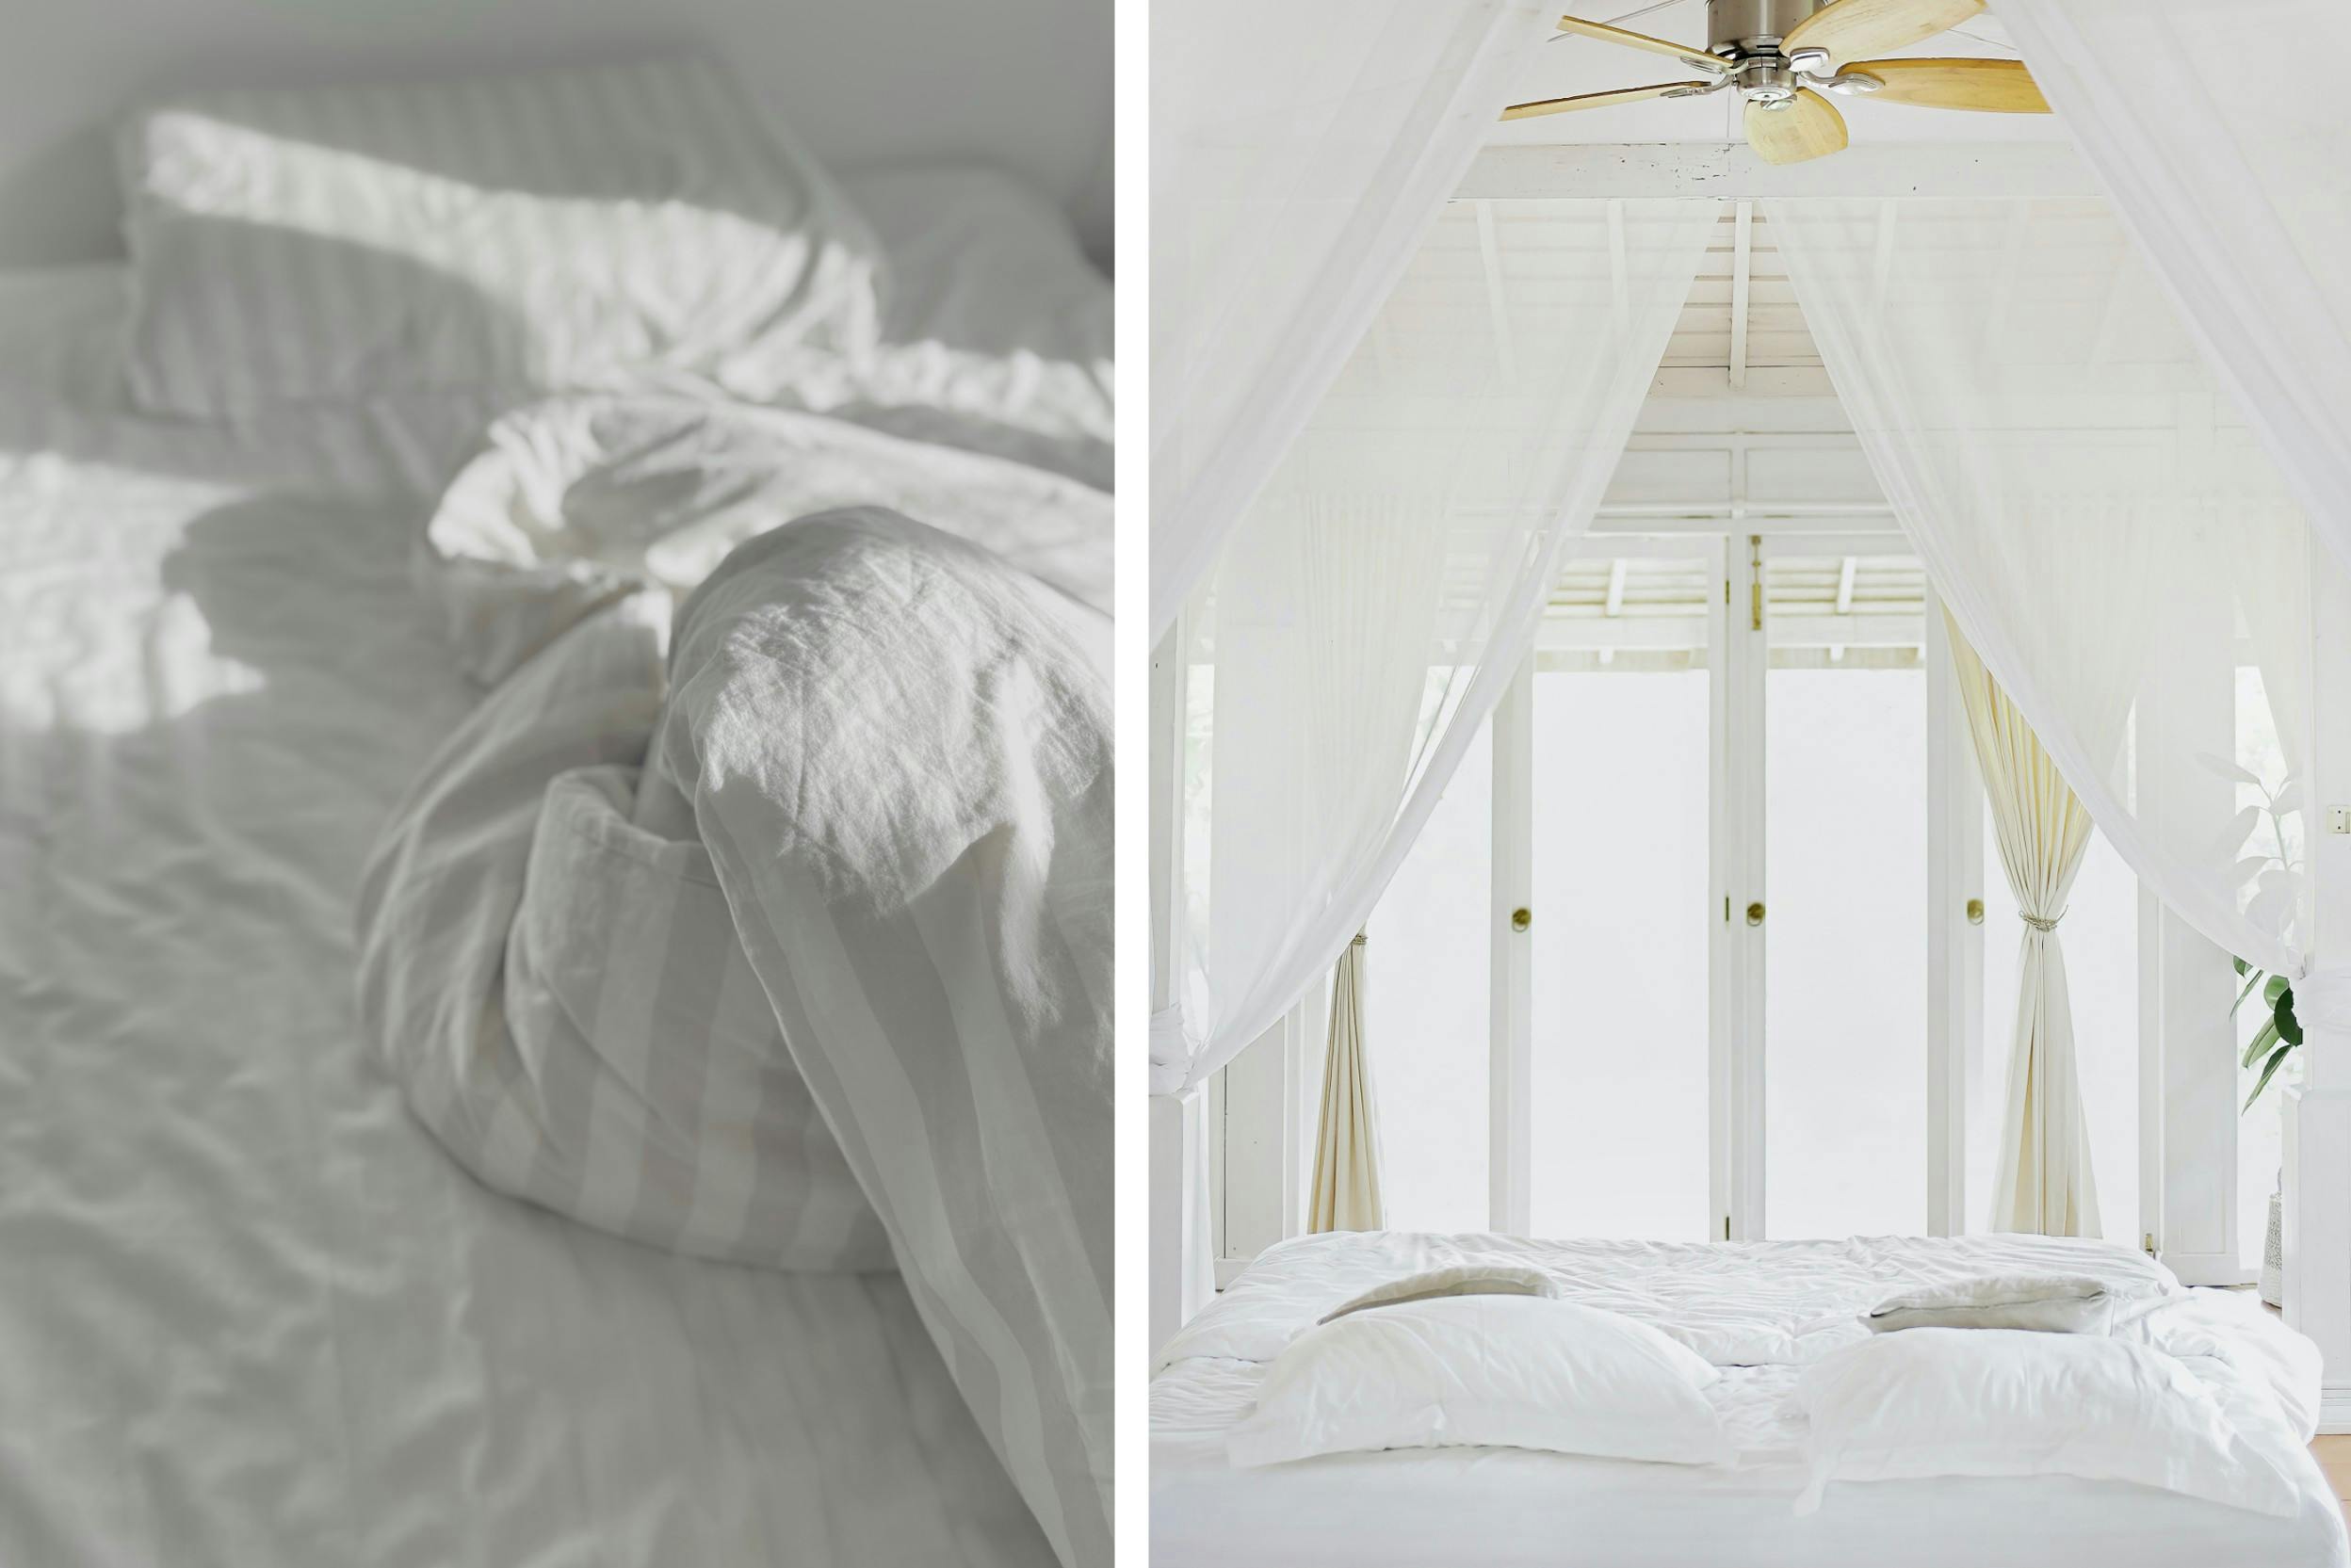 Deux photos, l'une d'un lit défait avec un linge de lit blanc, l'autre un lit à baldaquin avec rideaux translucides blancs et ventilateur au plafond, devant une grande fenêtre dans une pièce lumineuse